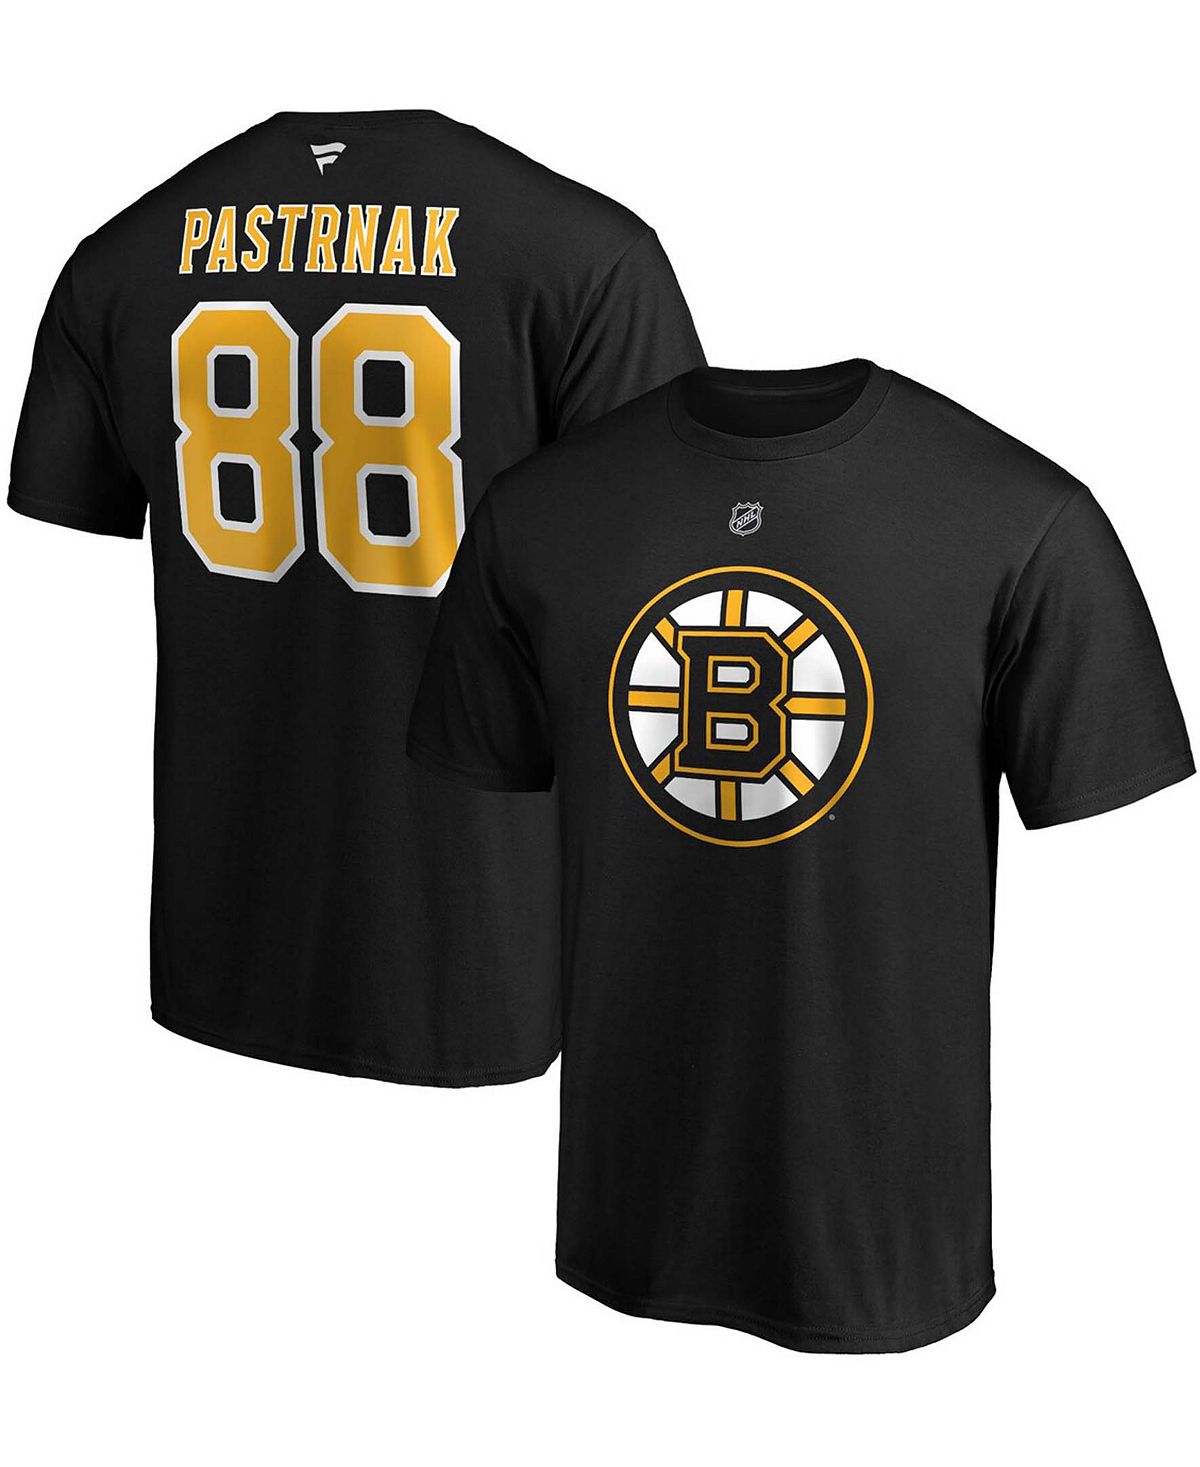 Мужская фирменная футболка david pastrnak boston bruins team authentic stack Fanatics, черный